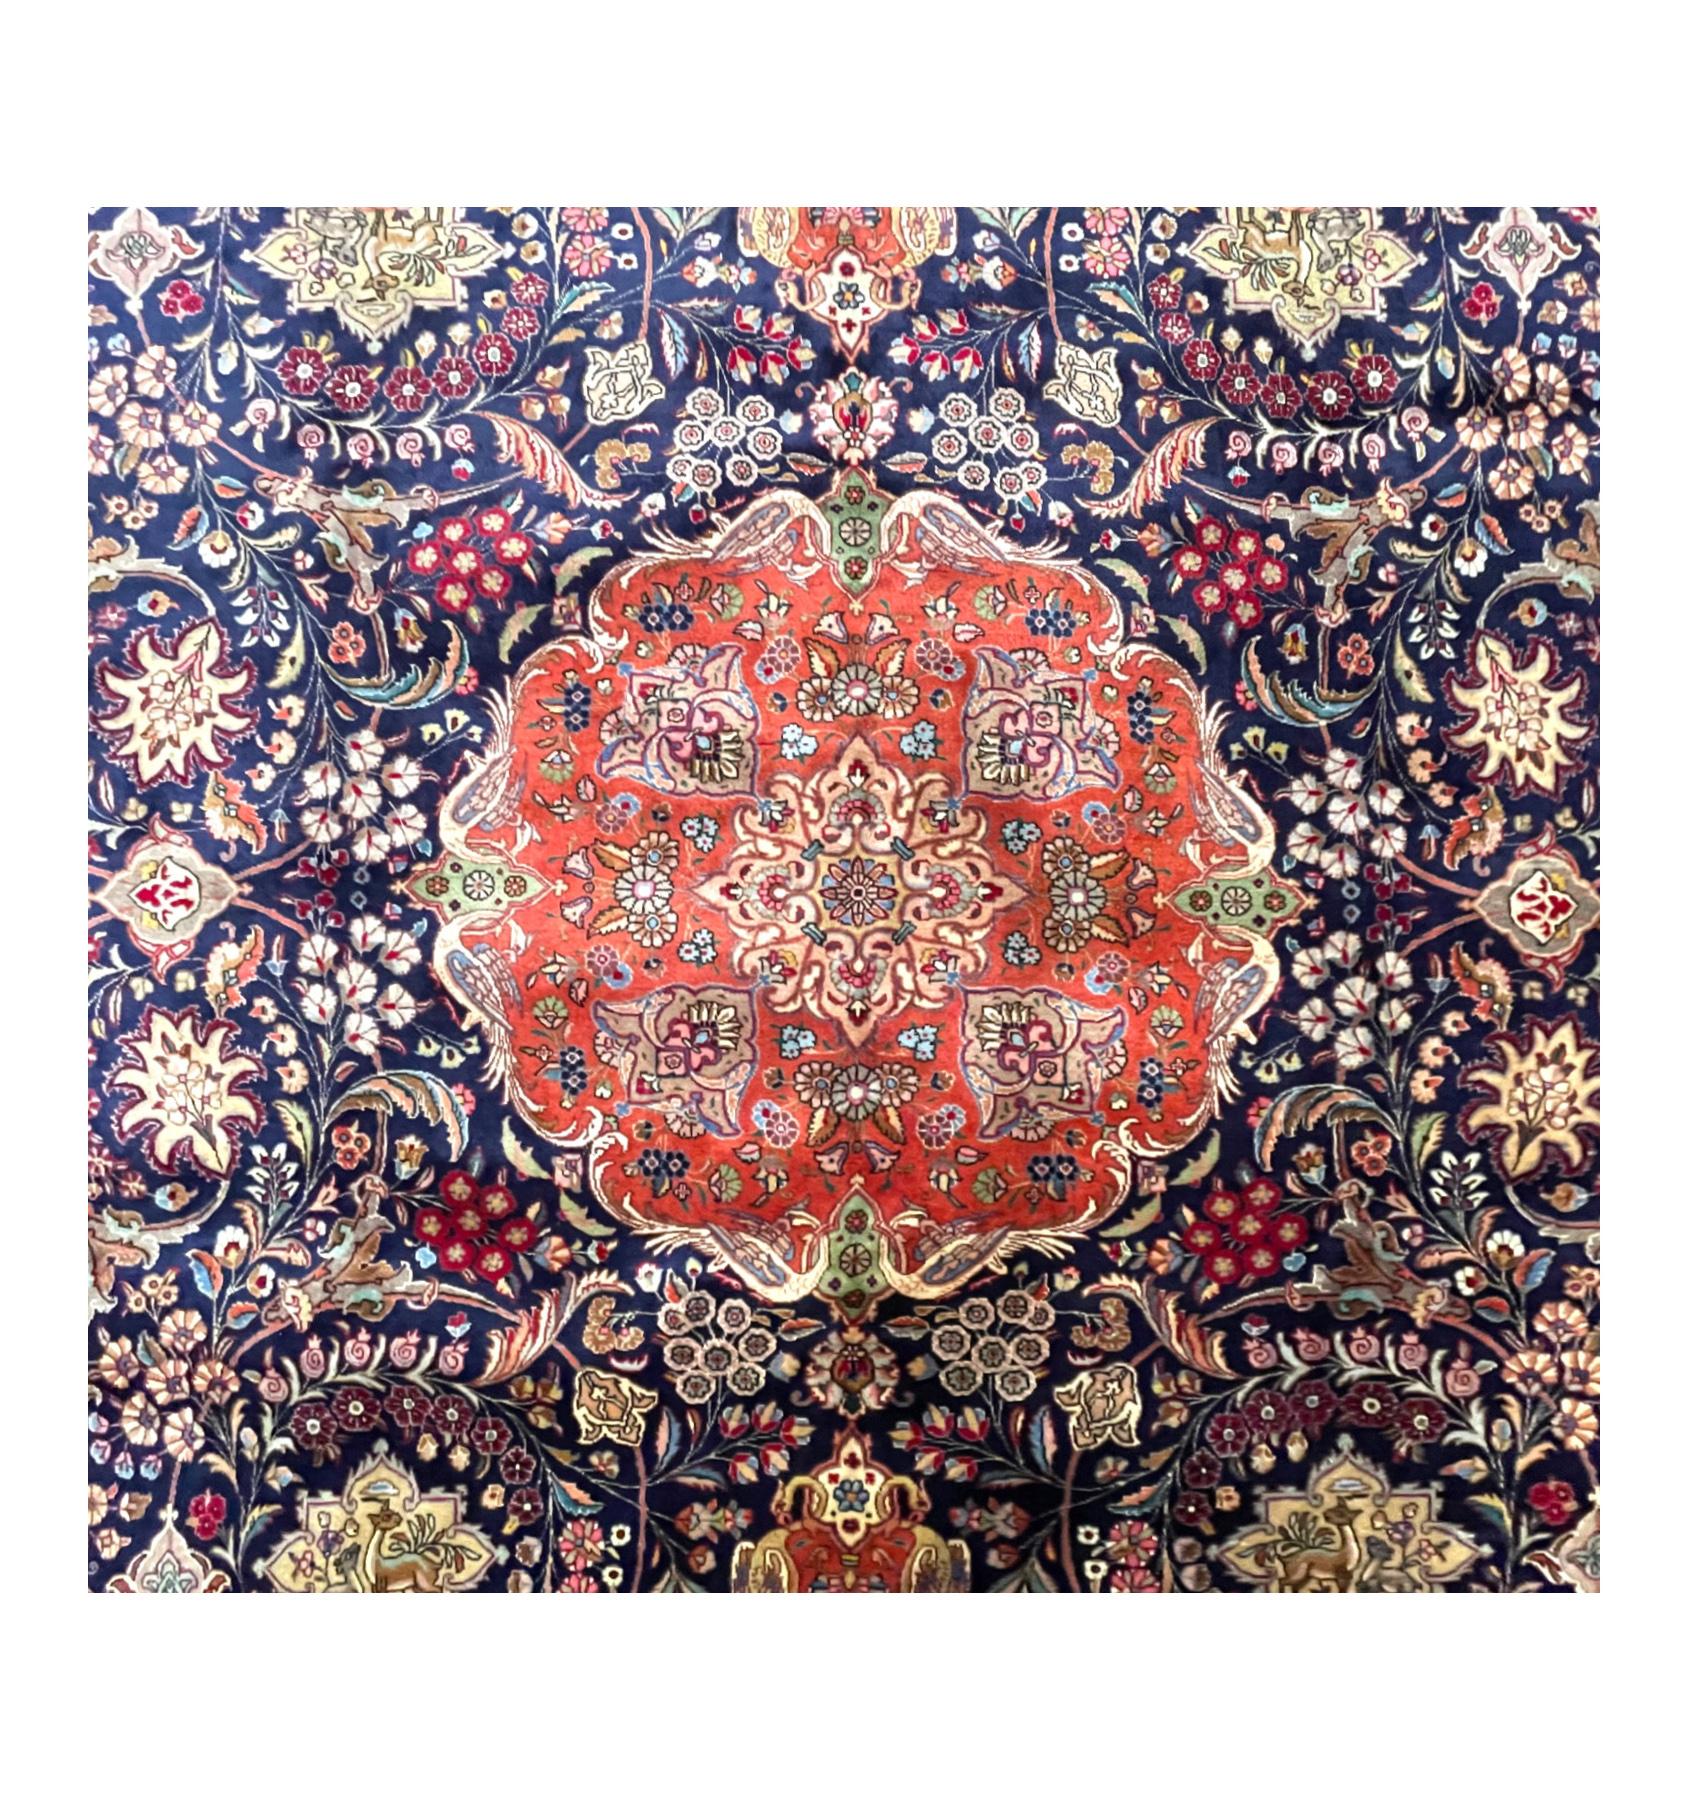 Ce tapis est un tapis persan Tabriz noué à la main de grande qualité. Tabriz est l'un des plus anciens centres de tissage de tapis et fabrique une grande diversité de types de tapis. Ce tapis présente un motif de médaillon floral et possède des